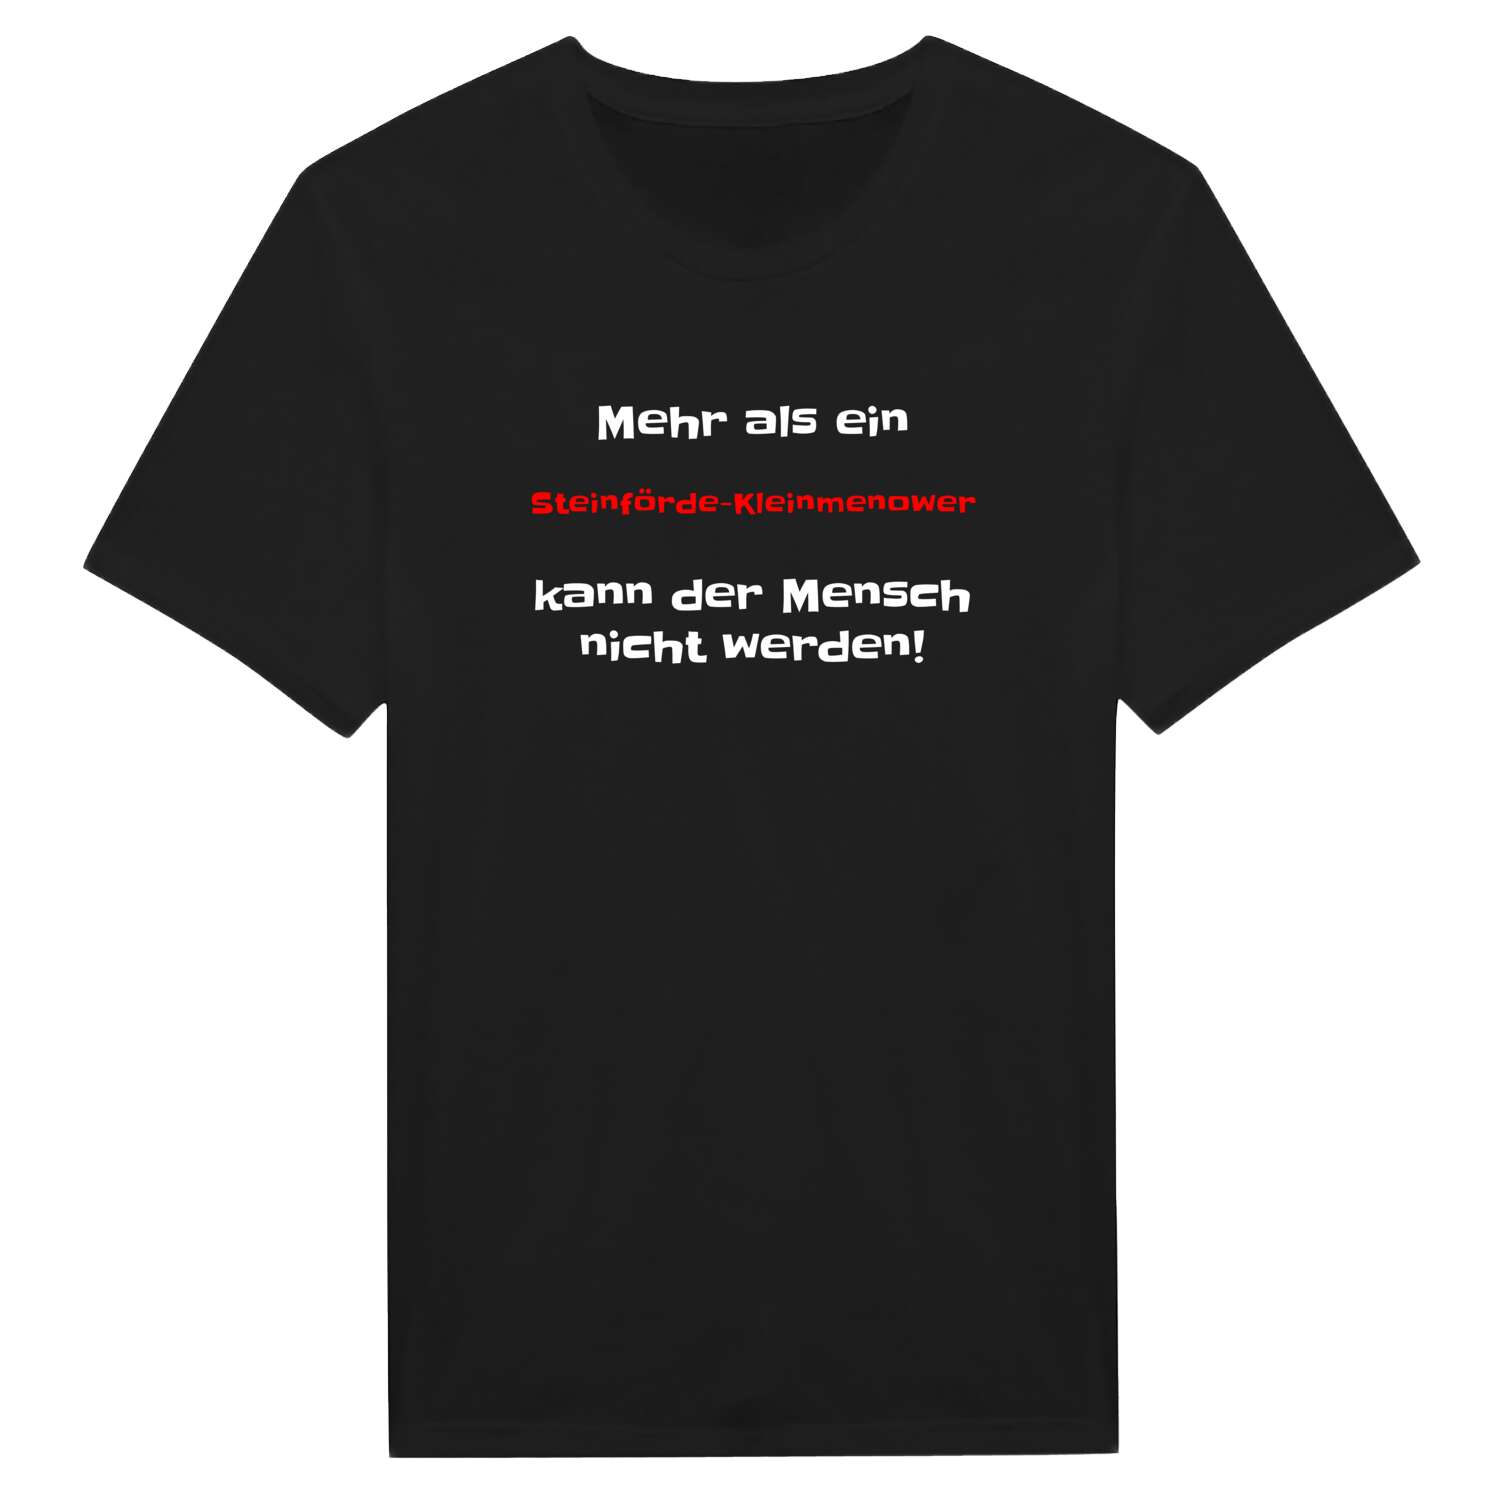 Steinförde-Kleinmenow T-Shirt »Mehr als ein«